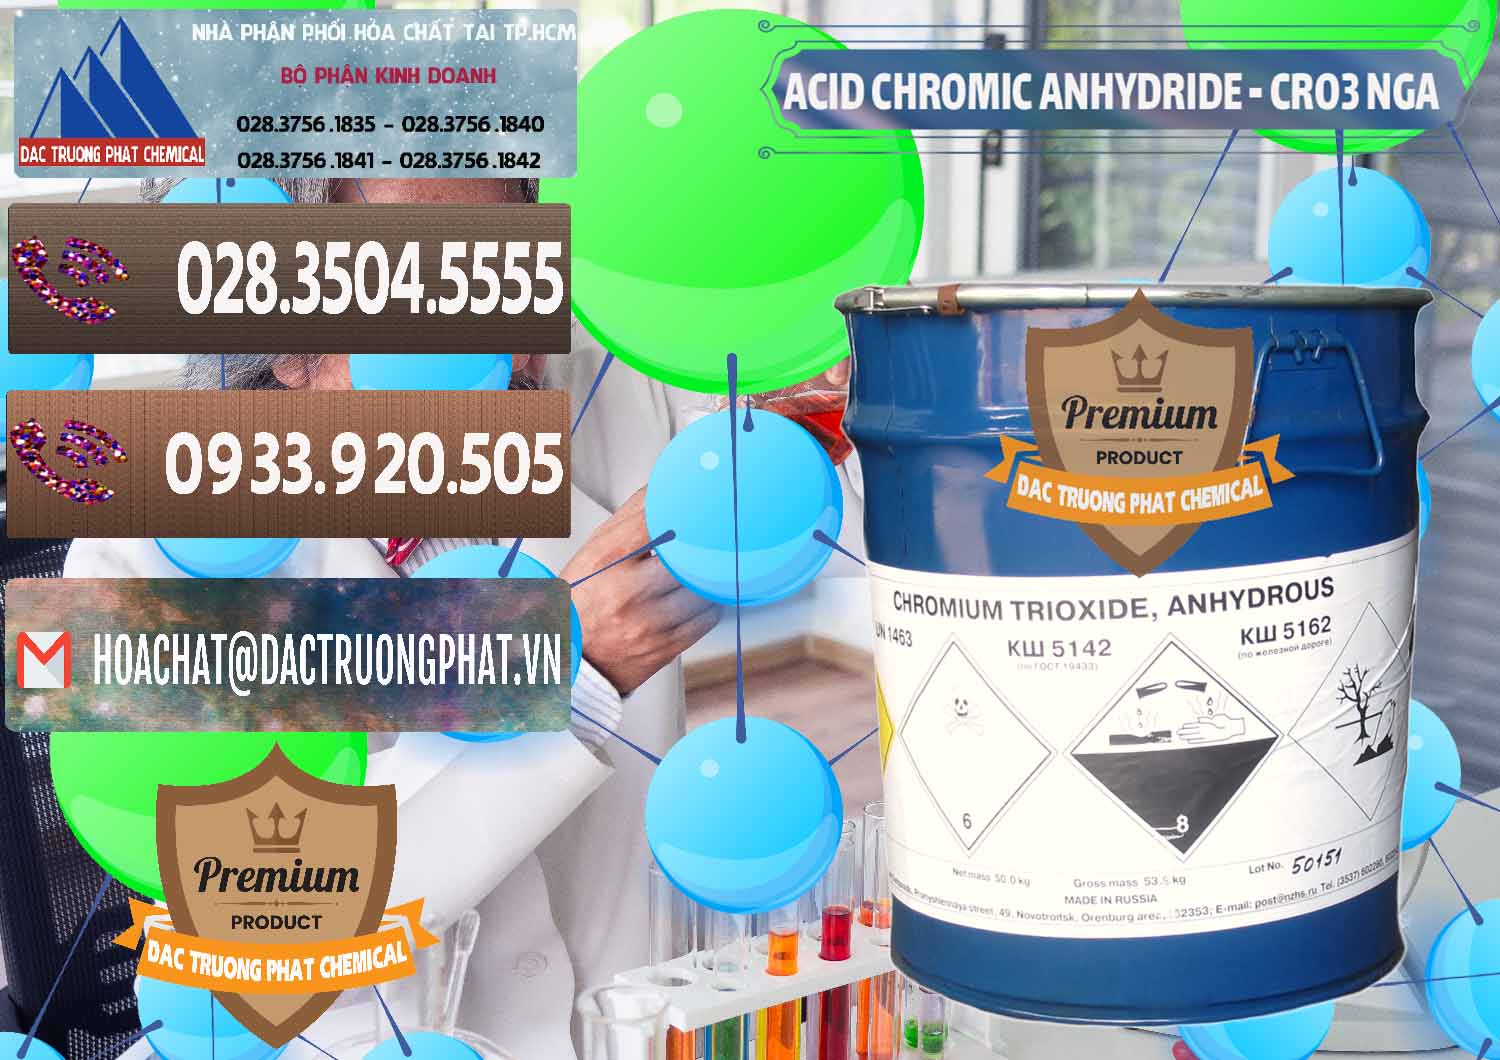 Đơn vị bán và phân phối Acid Chromic Anhydride - Cromic CRO3 Nga Russia - 0006 - Cty chuyên cung ứng ( phân phối ) hóa chất tại TP.HCM - hoachatviet.net